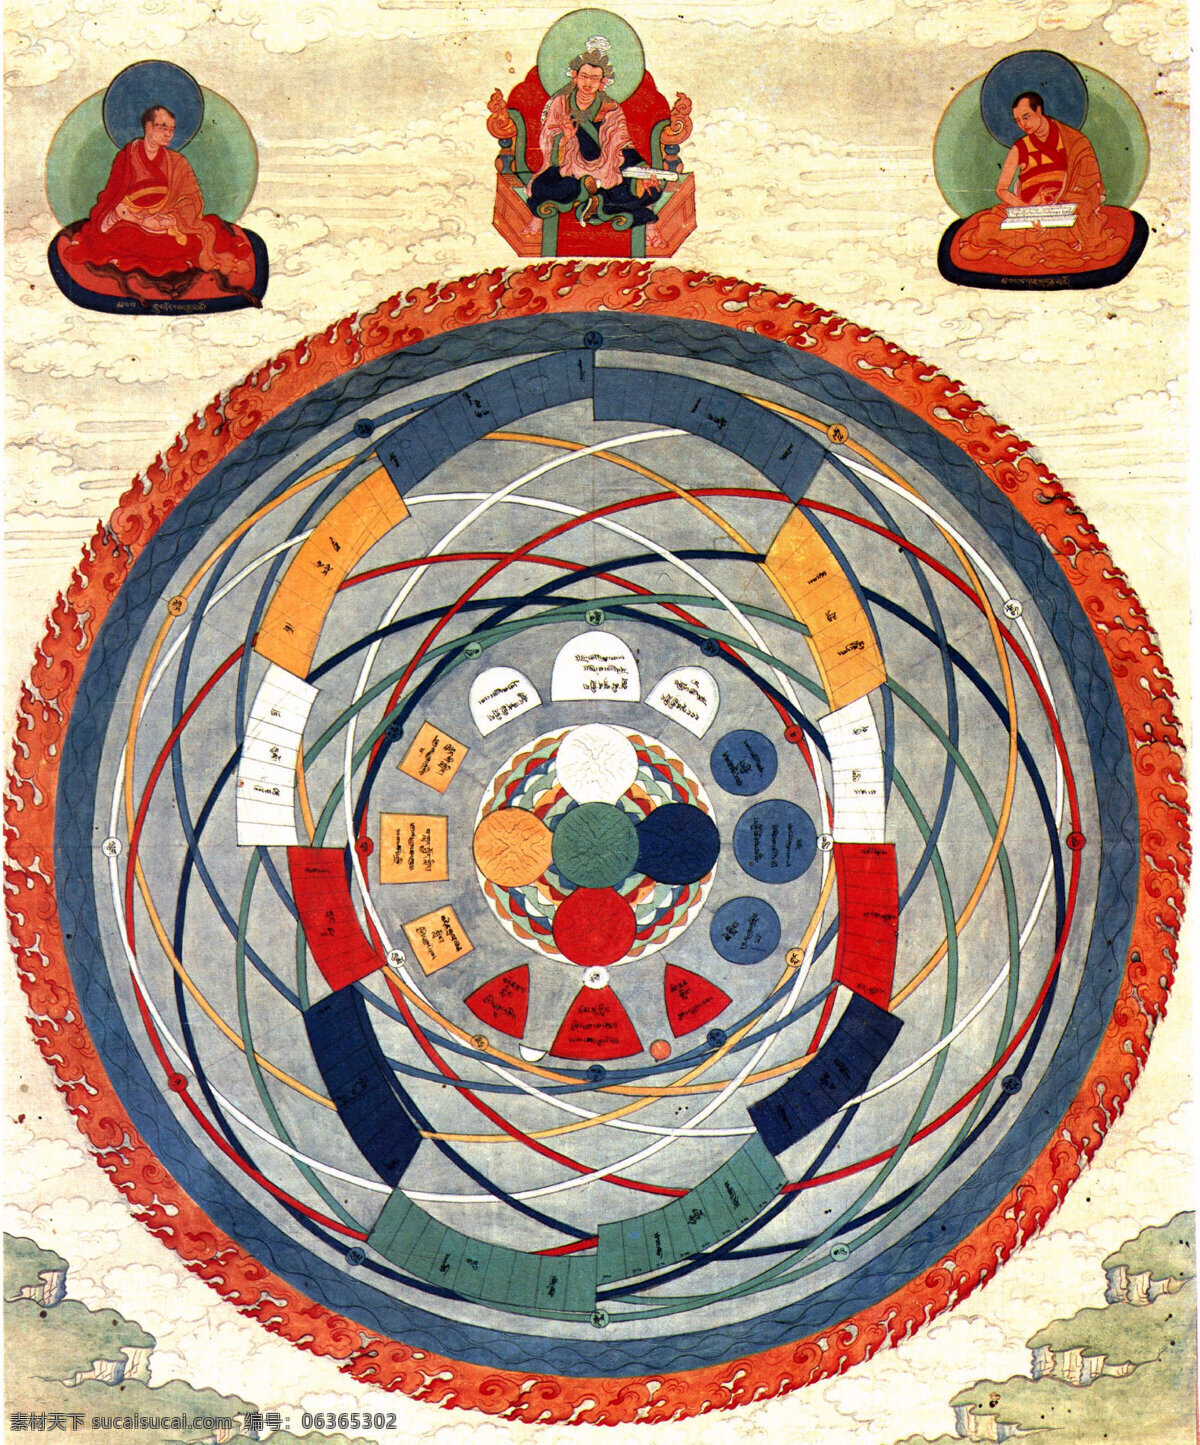 佛教 佛像图片 立体 菩萨 清朝 唐卡 文化艺术 天体 日月星辰 运行图 密宗 铜佛像 西藏 宗教信仰